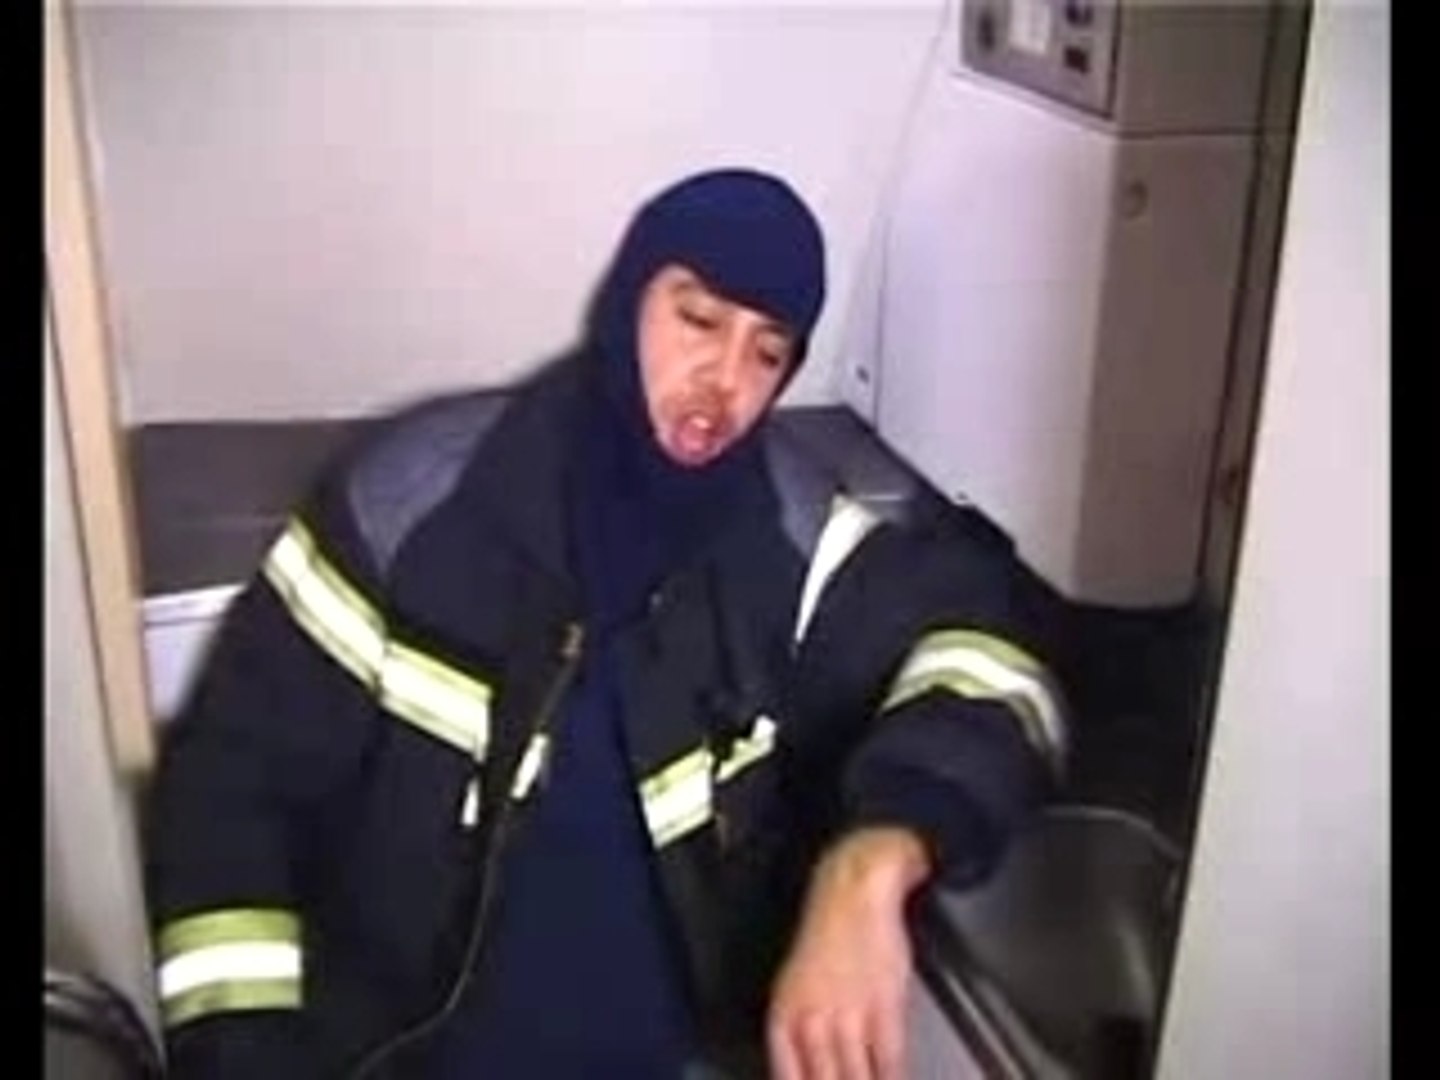 Fous ta cagoule - Pompiers - Vidéo Dailymotion